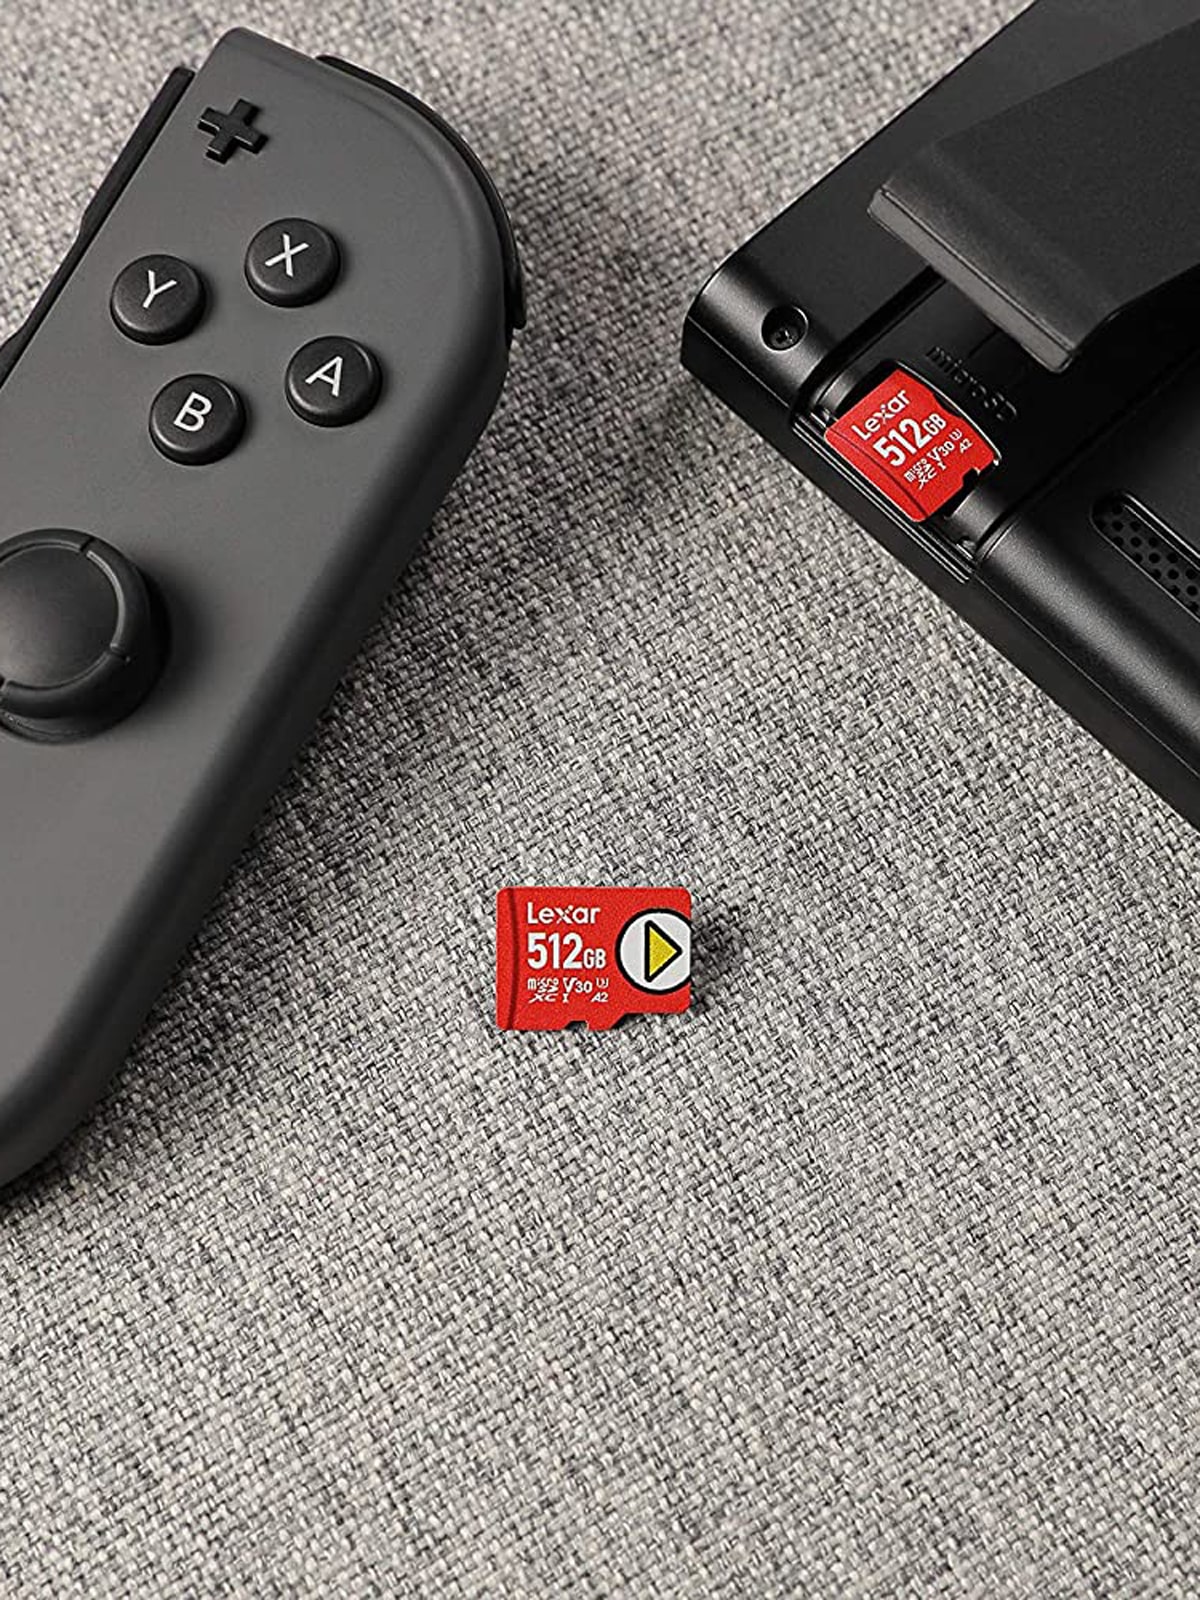 Nintendo Switch : -63% sur la carte microSD officielle de 256 Go